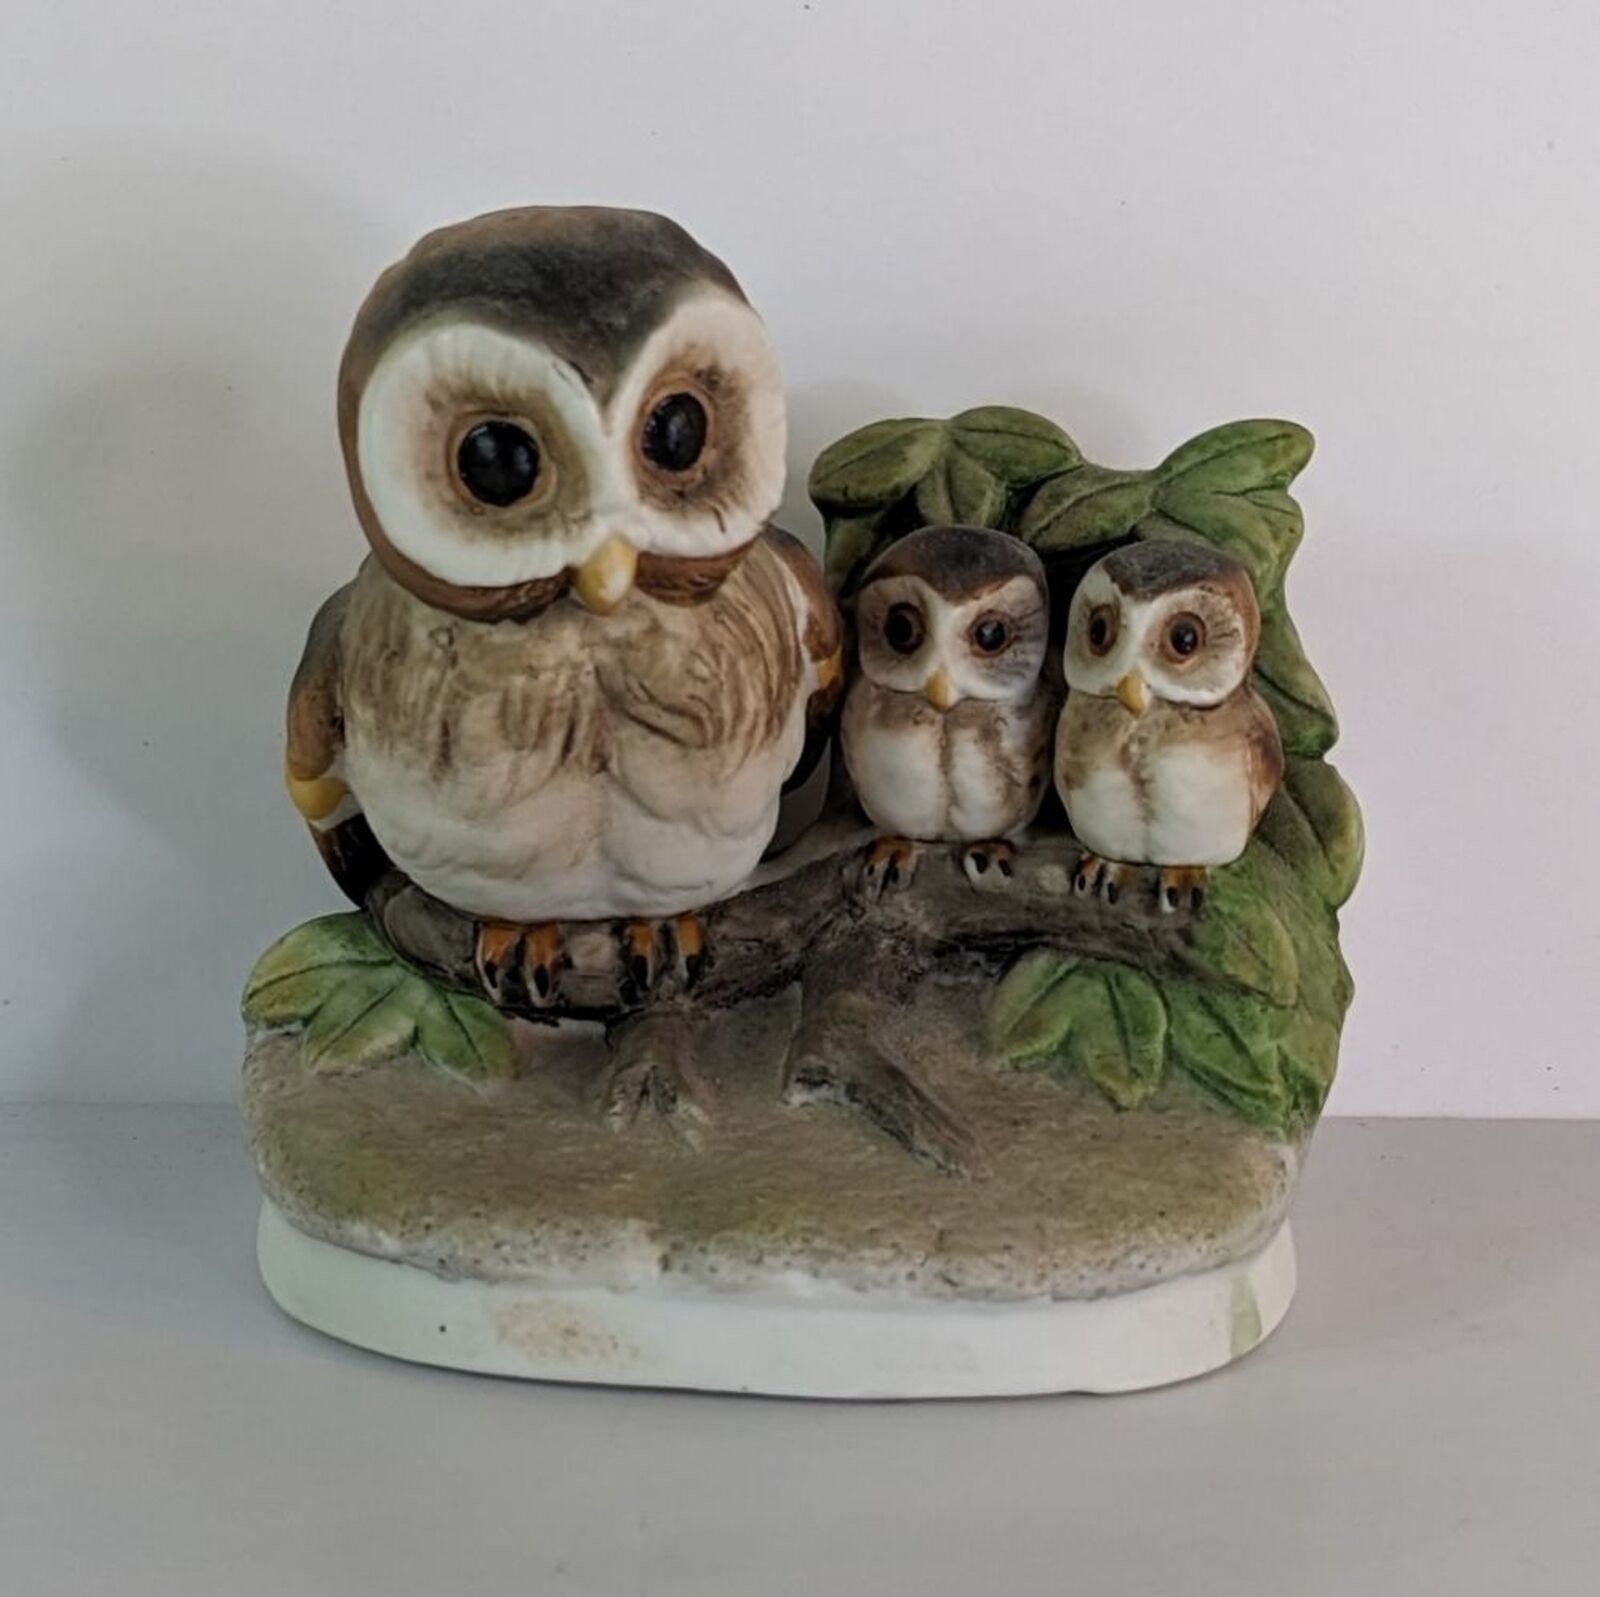 VTG Homco Ceramic Screech Owl Figurine 1298 EUC